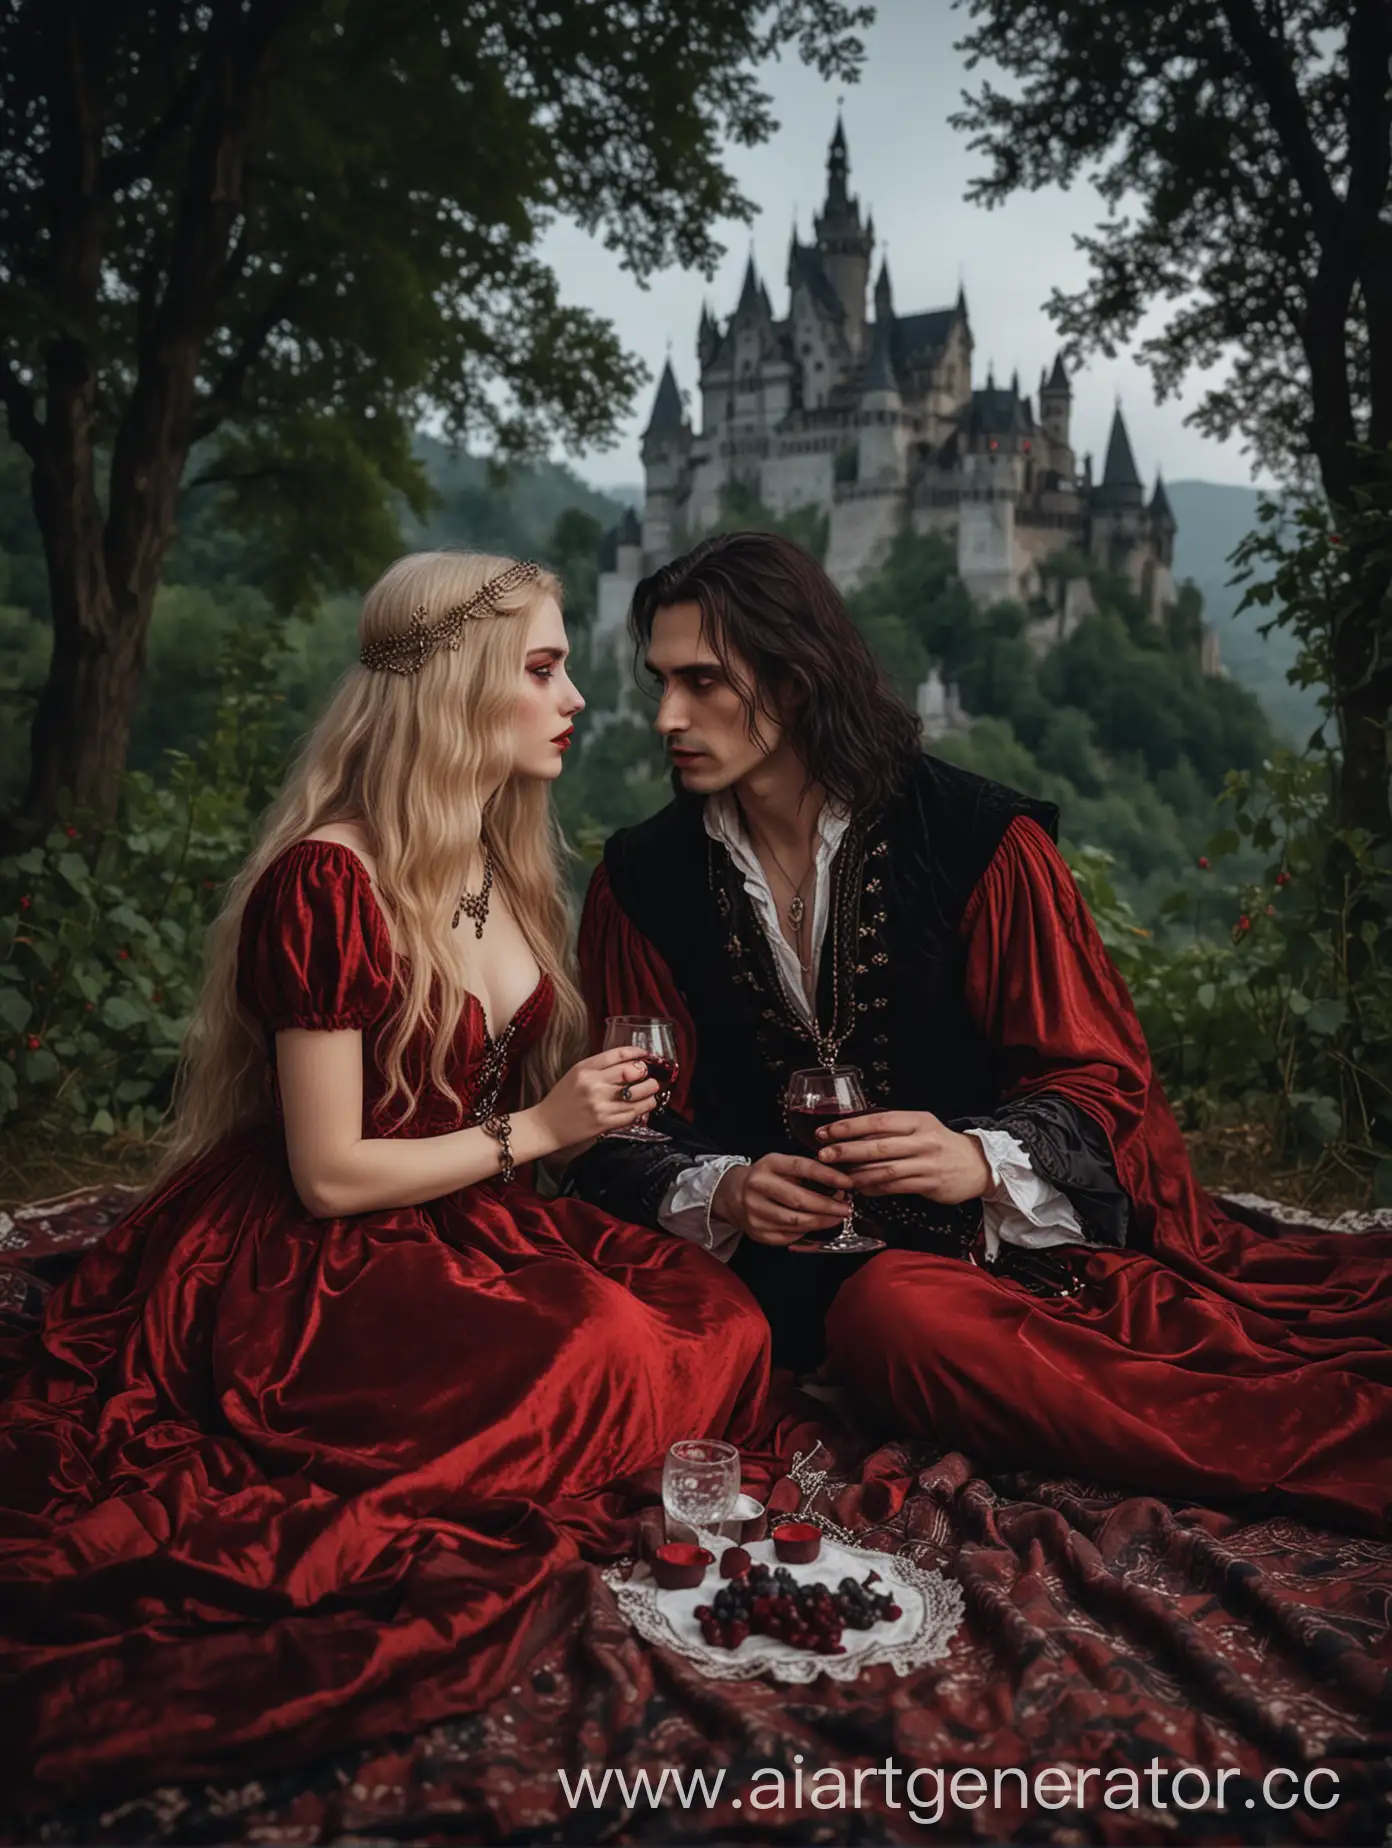 пикник в лесу, два богатых вампира с красными глазами сидят в анфас на пледе (девушка с длинными светлыми волосами с украшениями в красном бархатном платье и мужчина с черными длинными волосами с кулоном на шее) пьют красное вино из красивых бокалов, вокруг зелень в темных тонах, на фоне вдалеке замок Дракулы, сумрак и легкий туман